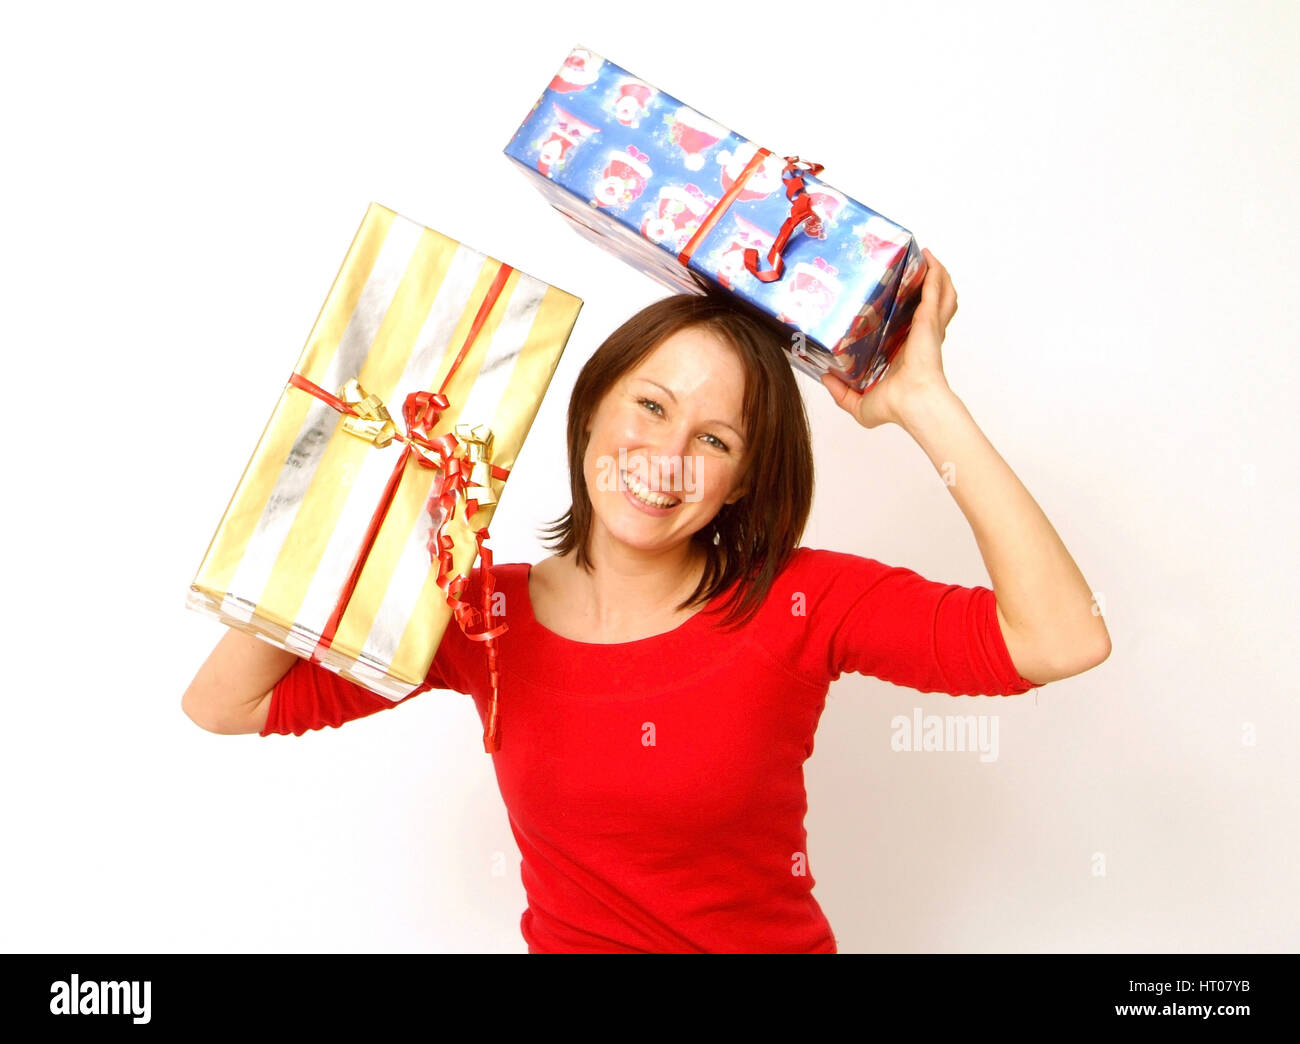 Frau mit Weihnachtsgeschenken - donna con i regali di natale Foto Stock